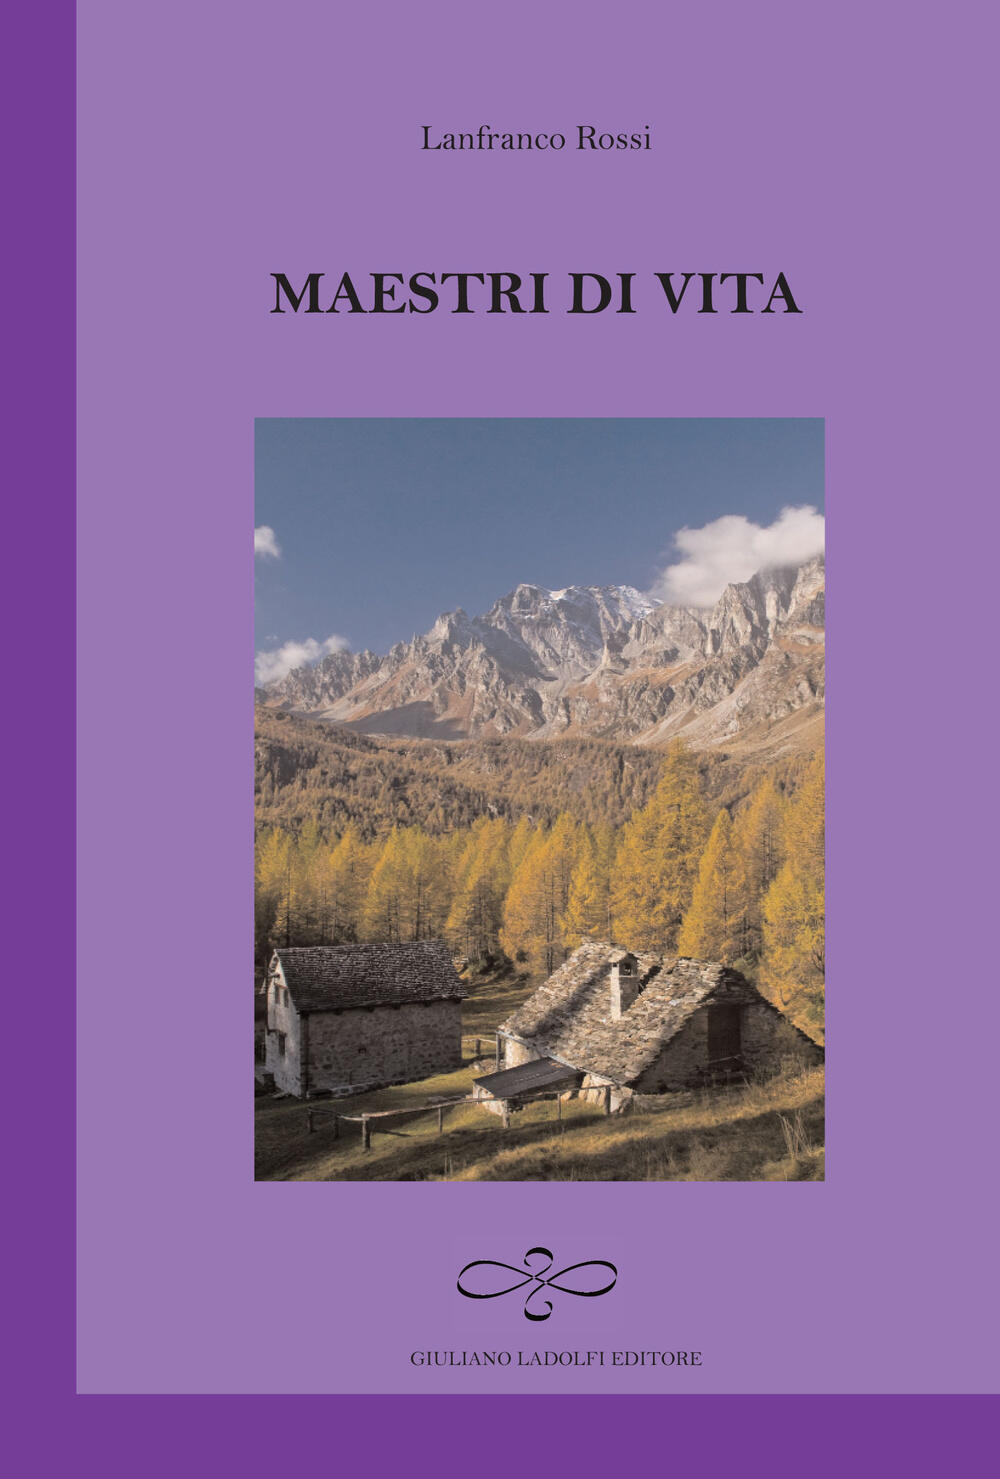 Maestri di vita - Lanfranco Rossi - Libro - Giuliano Ladolfi Editore